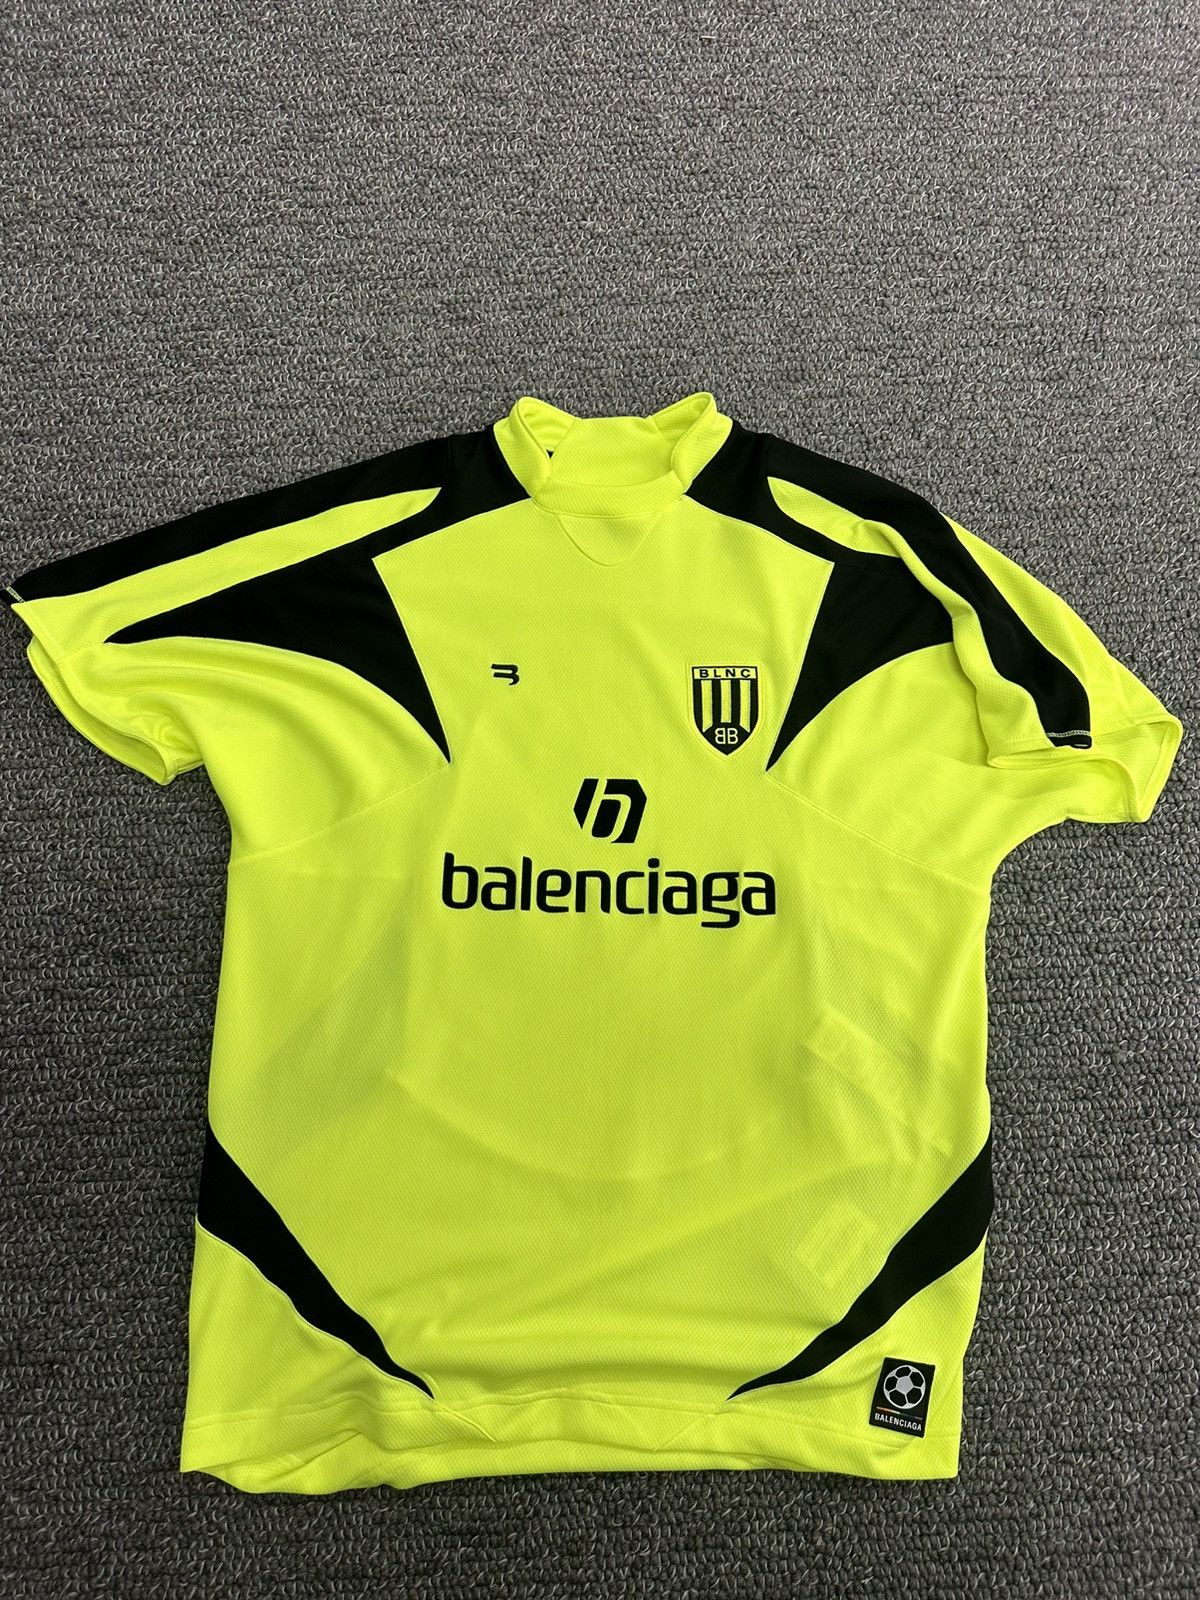 Balenciaga Balenciaga Soccer Jersey | Grailed